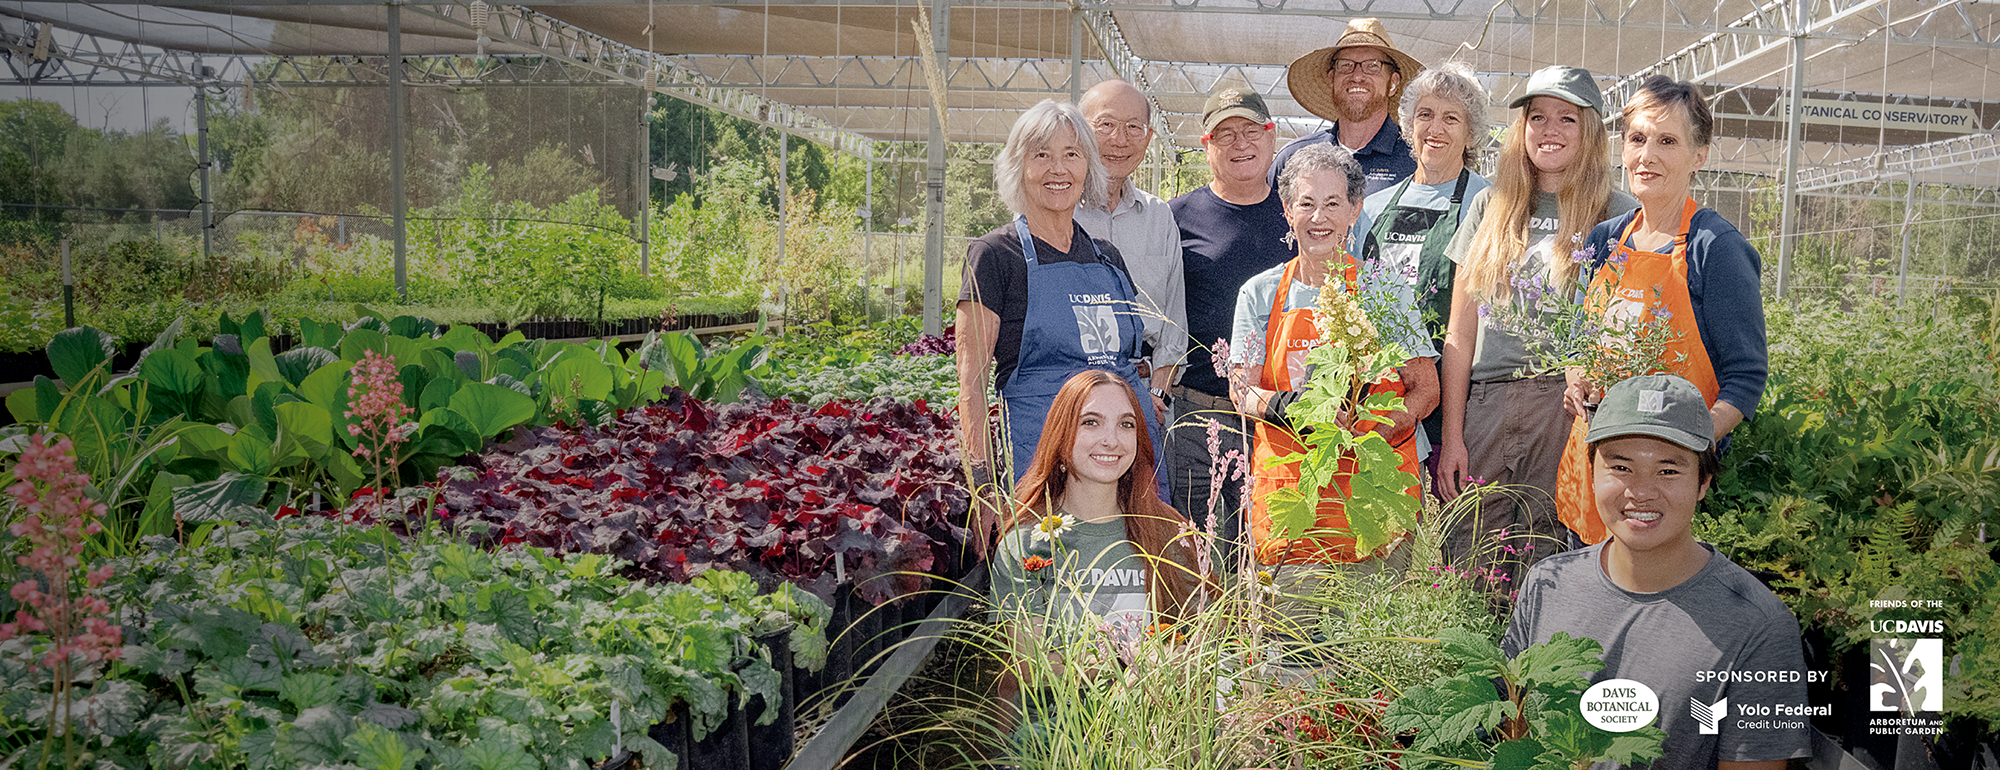 Image of student interns, volunteers and staff at the UC Davis Arboretum Teaching Nursery.